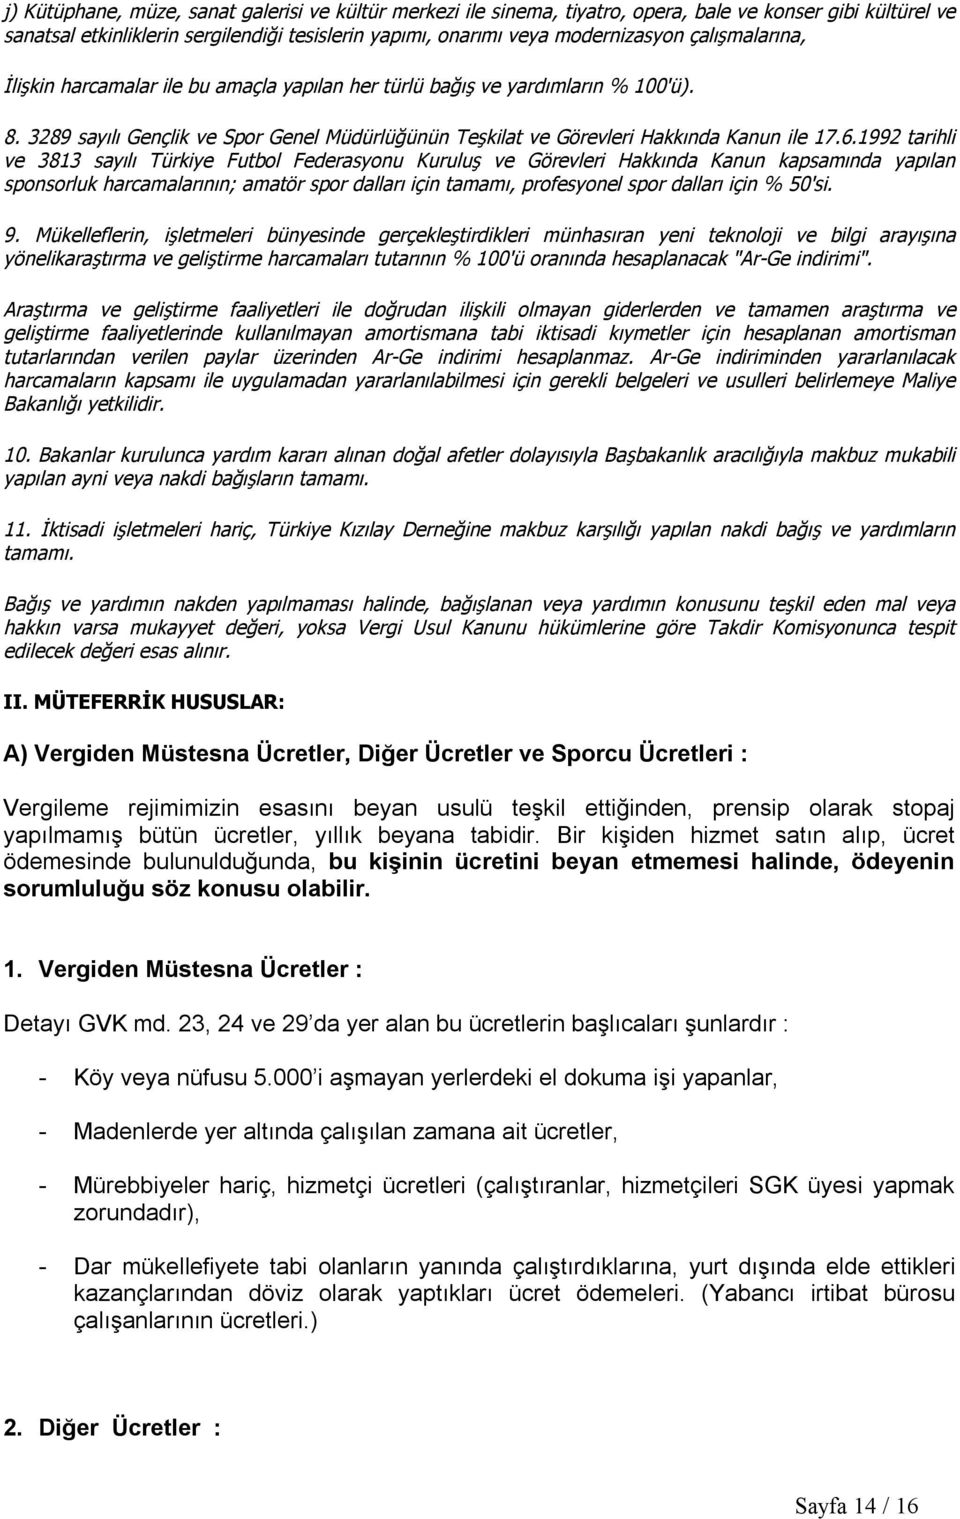 1992 tarihli ve 3813 sayılı Türkiye Futbol Federasyonu Kuruluş ve Görevleri Hakkında Kanun kapsamında yapılan sponsorluk harcamalarının; amatör spor dalları için tamamı, profesyonel spor dalları için